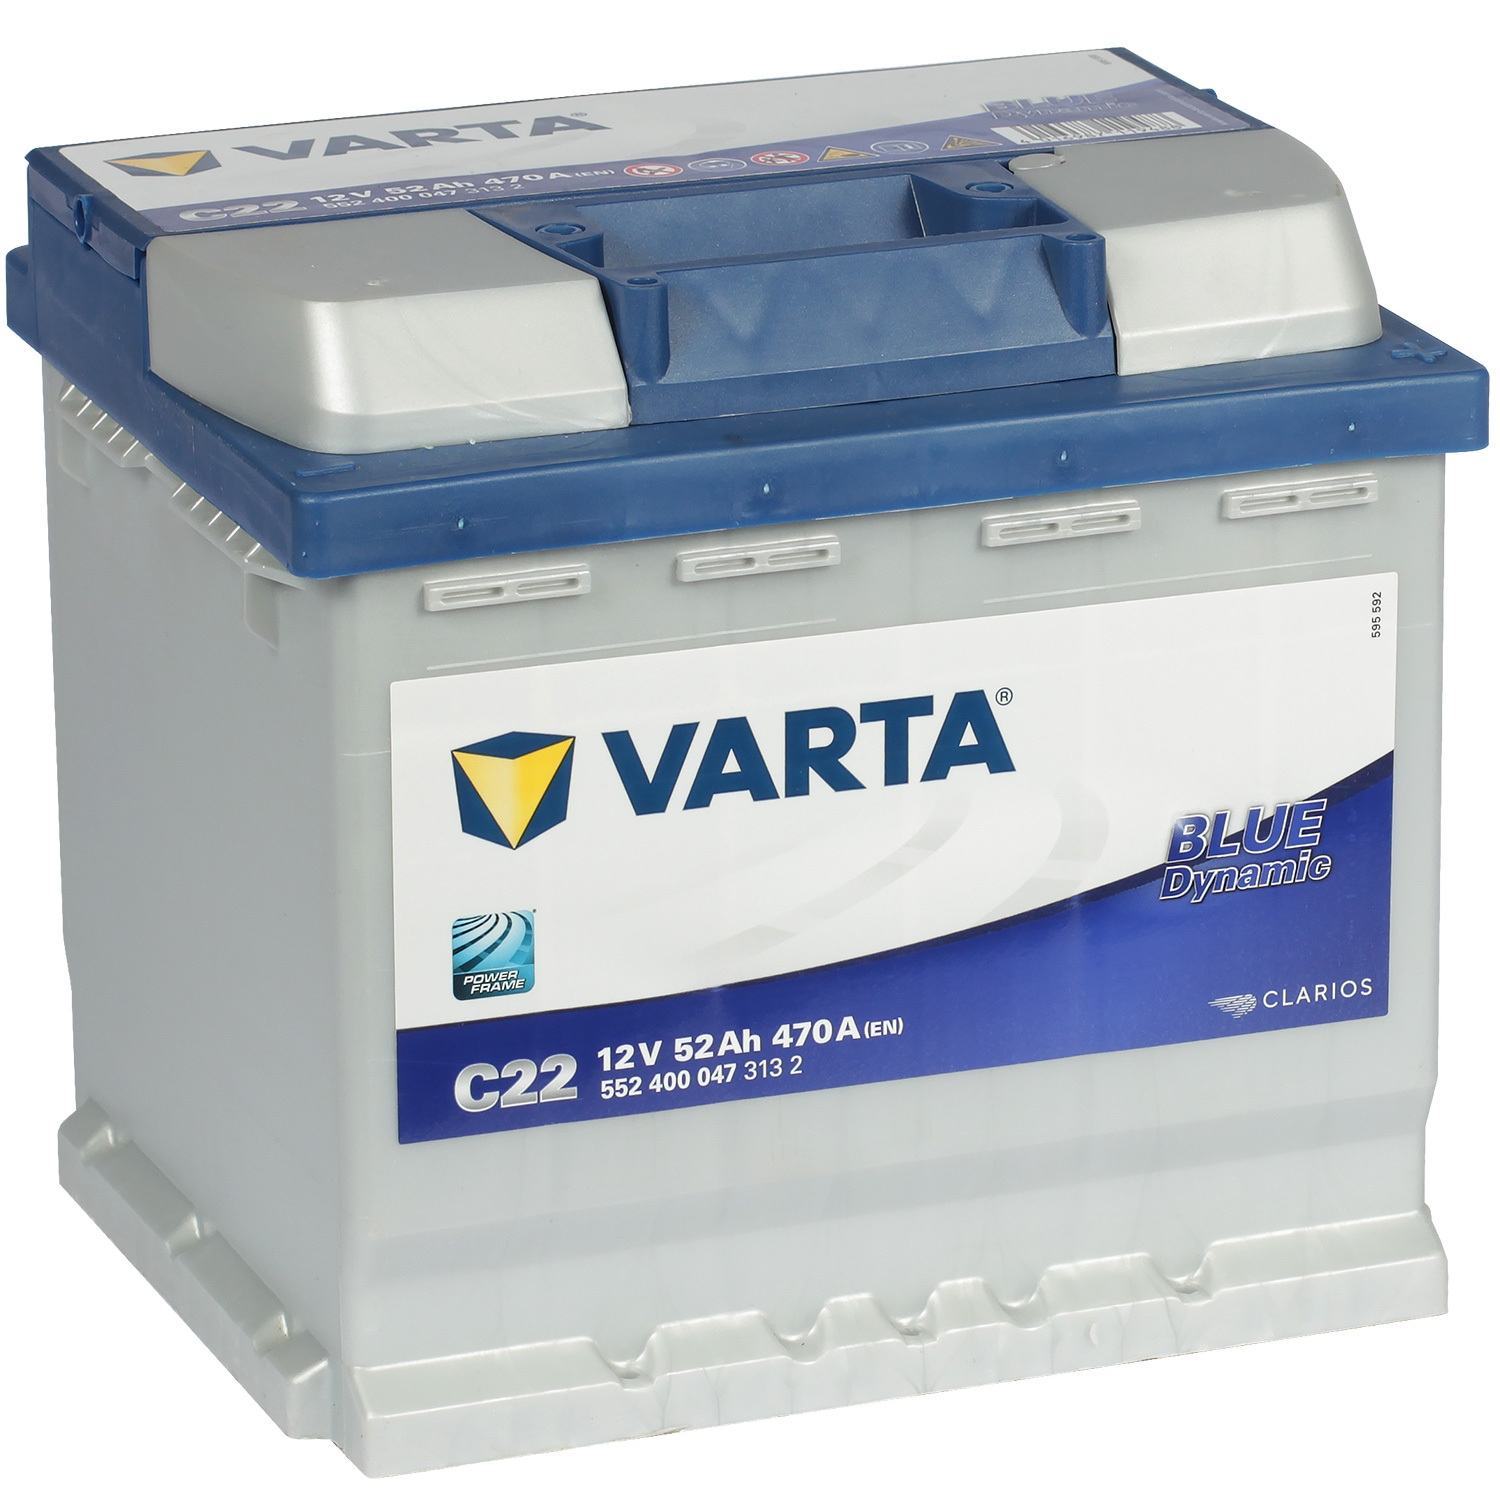 Varta Автомобильный аккумулятор Varta Blue Dynamic C22 52 Ач обратная полярность L1 varta автомобильный аккумулятор varta 54 ач обратная полярность l1